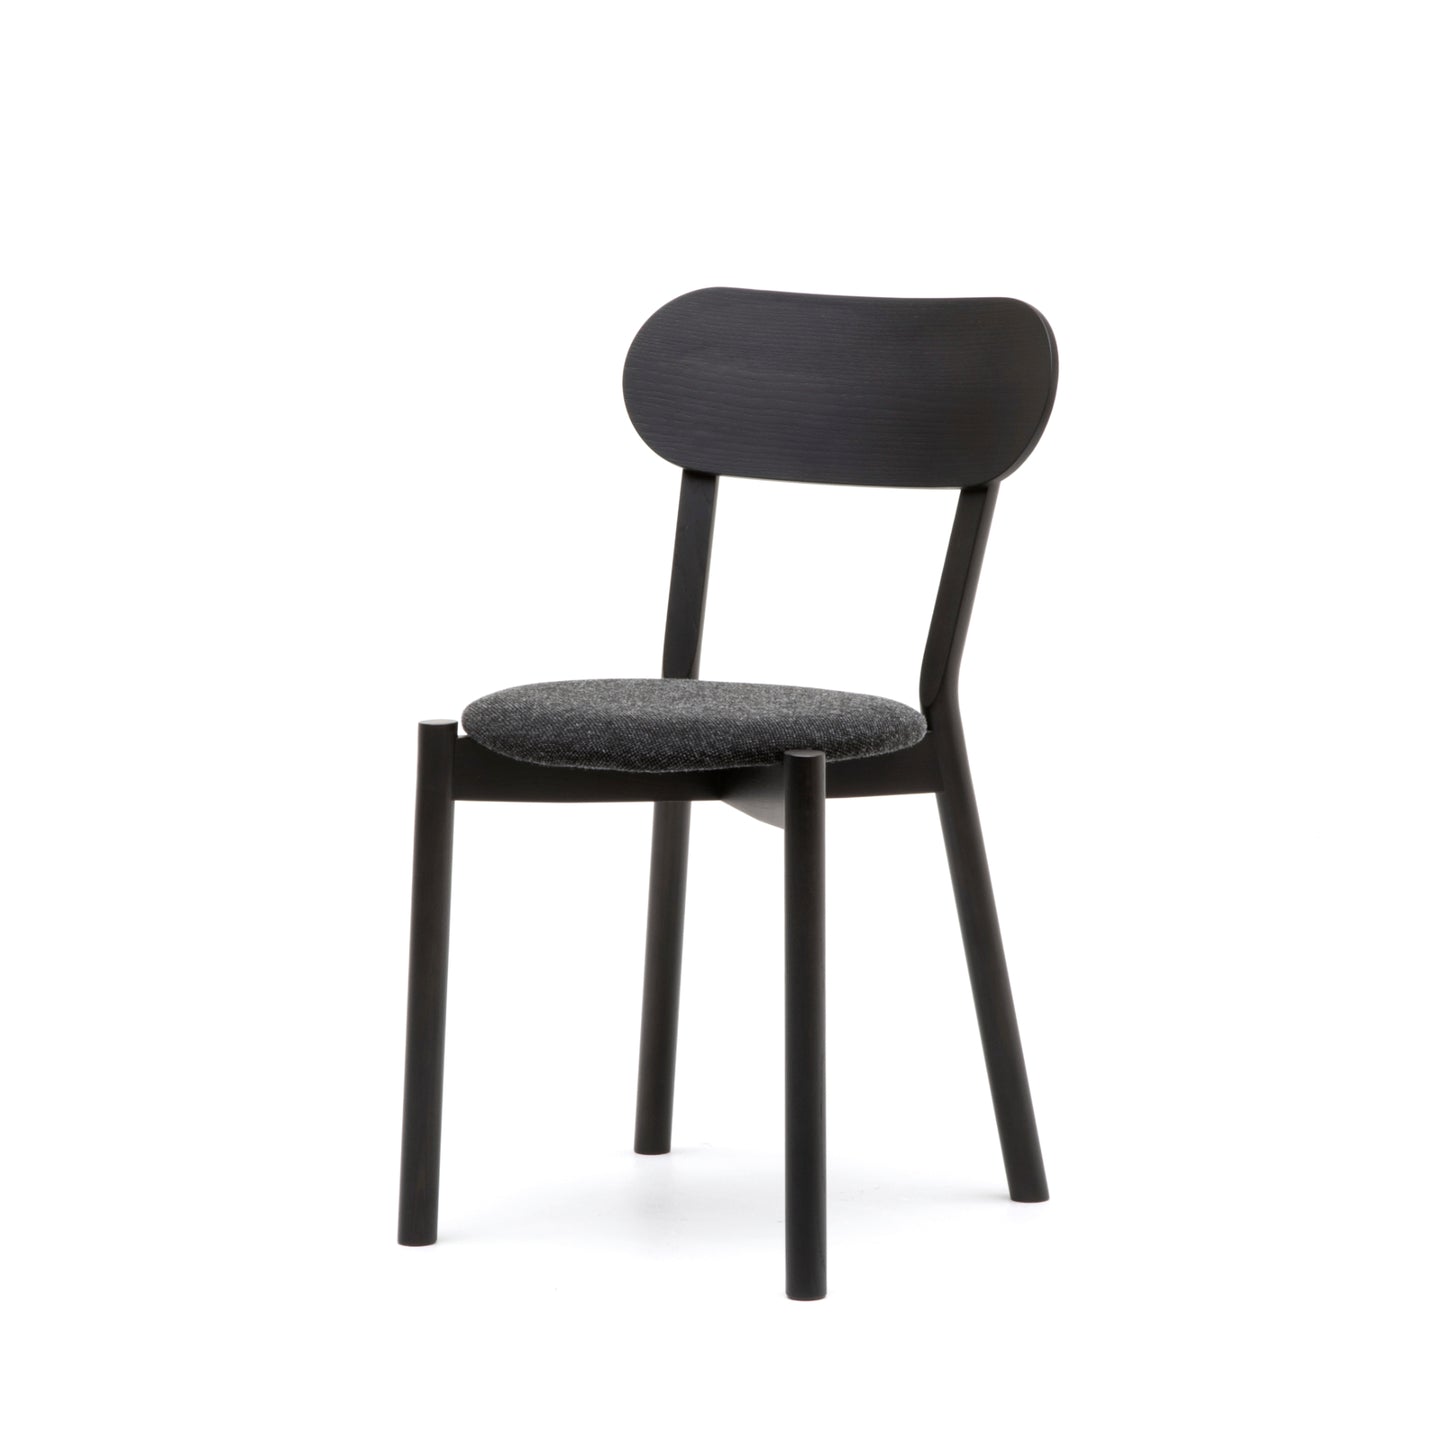 Castor Chair Plus Pad | キャストールチェアプラスパッド